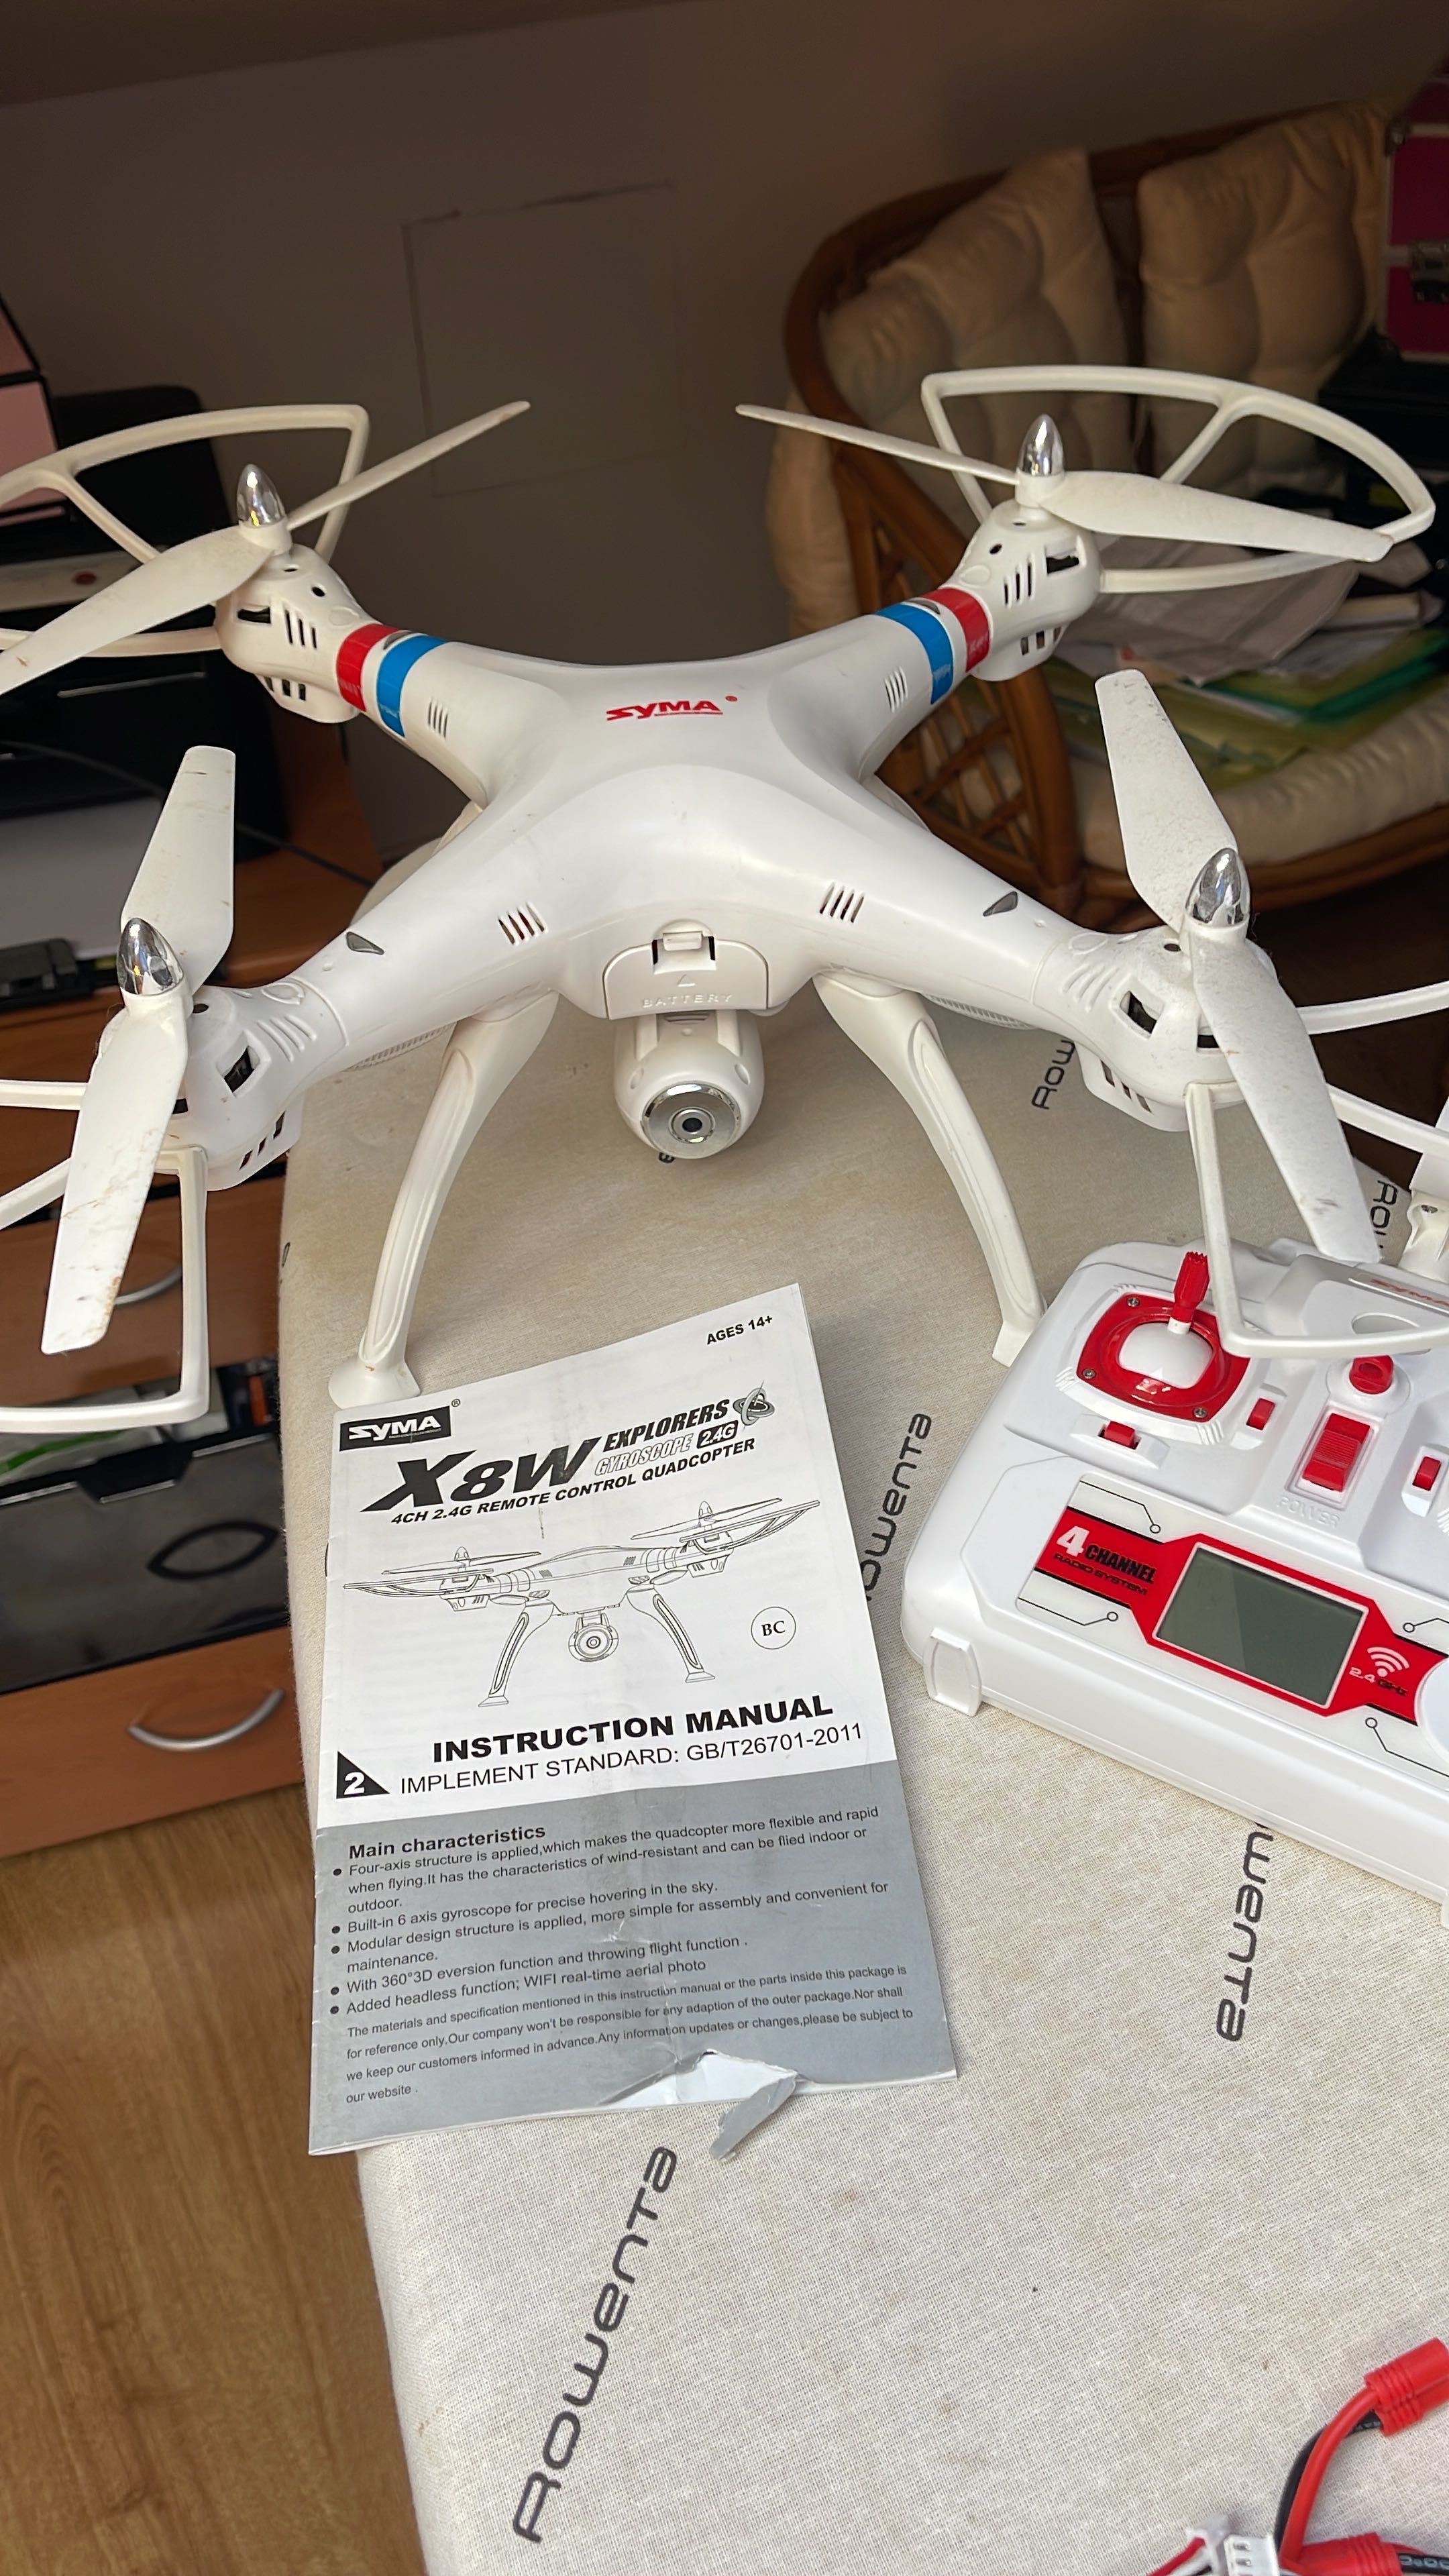 Drone syma x8w como novo